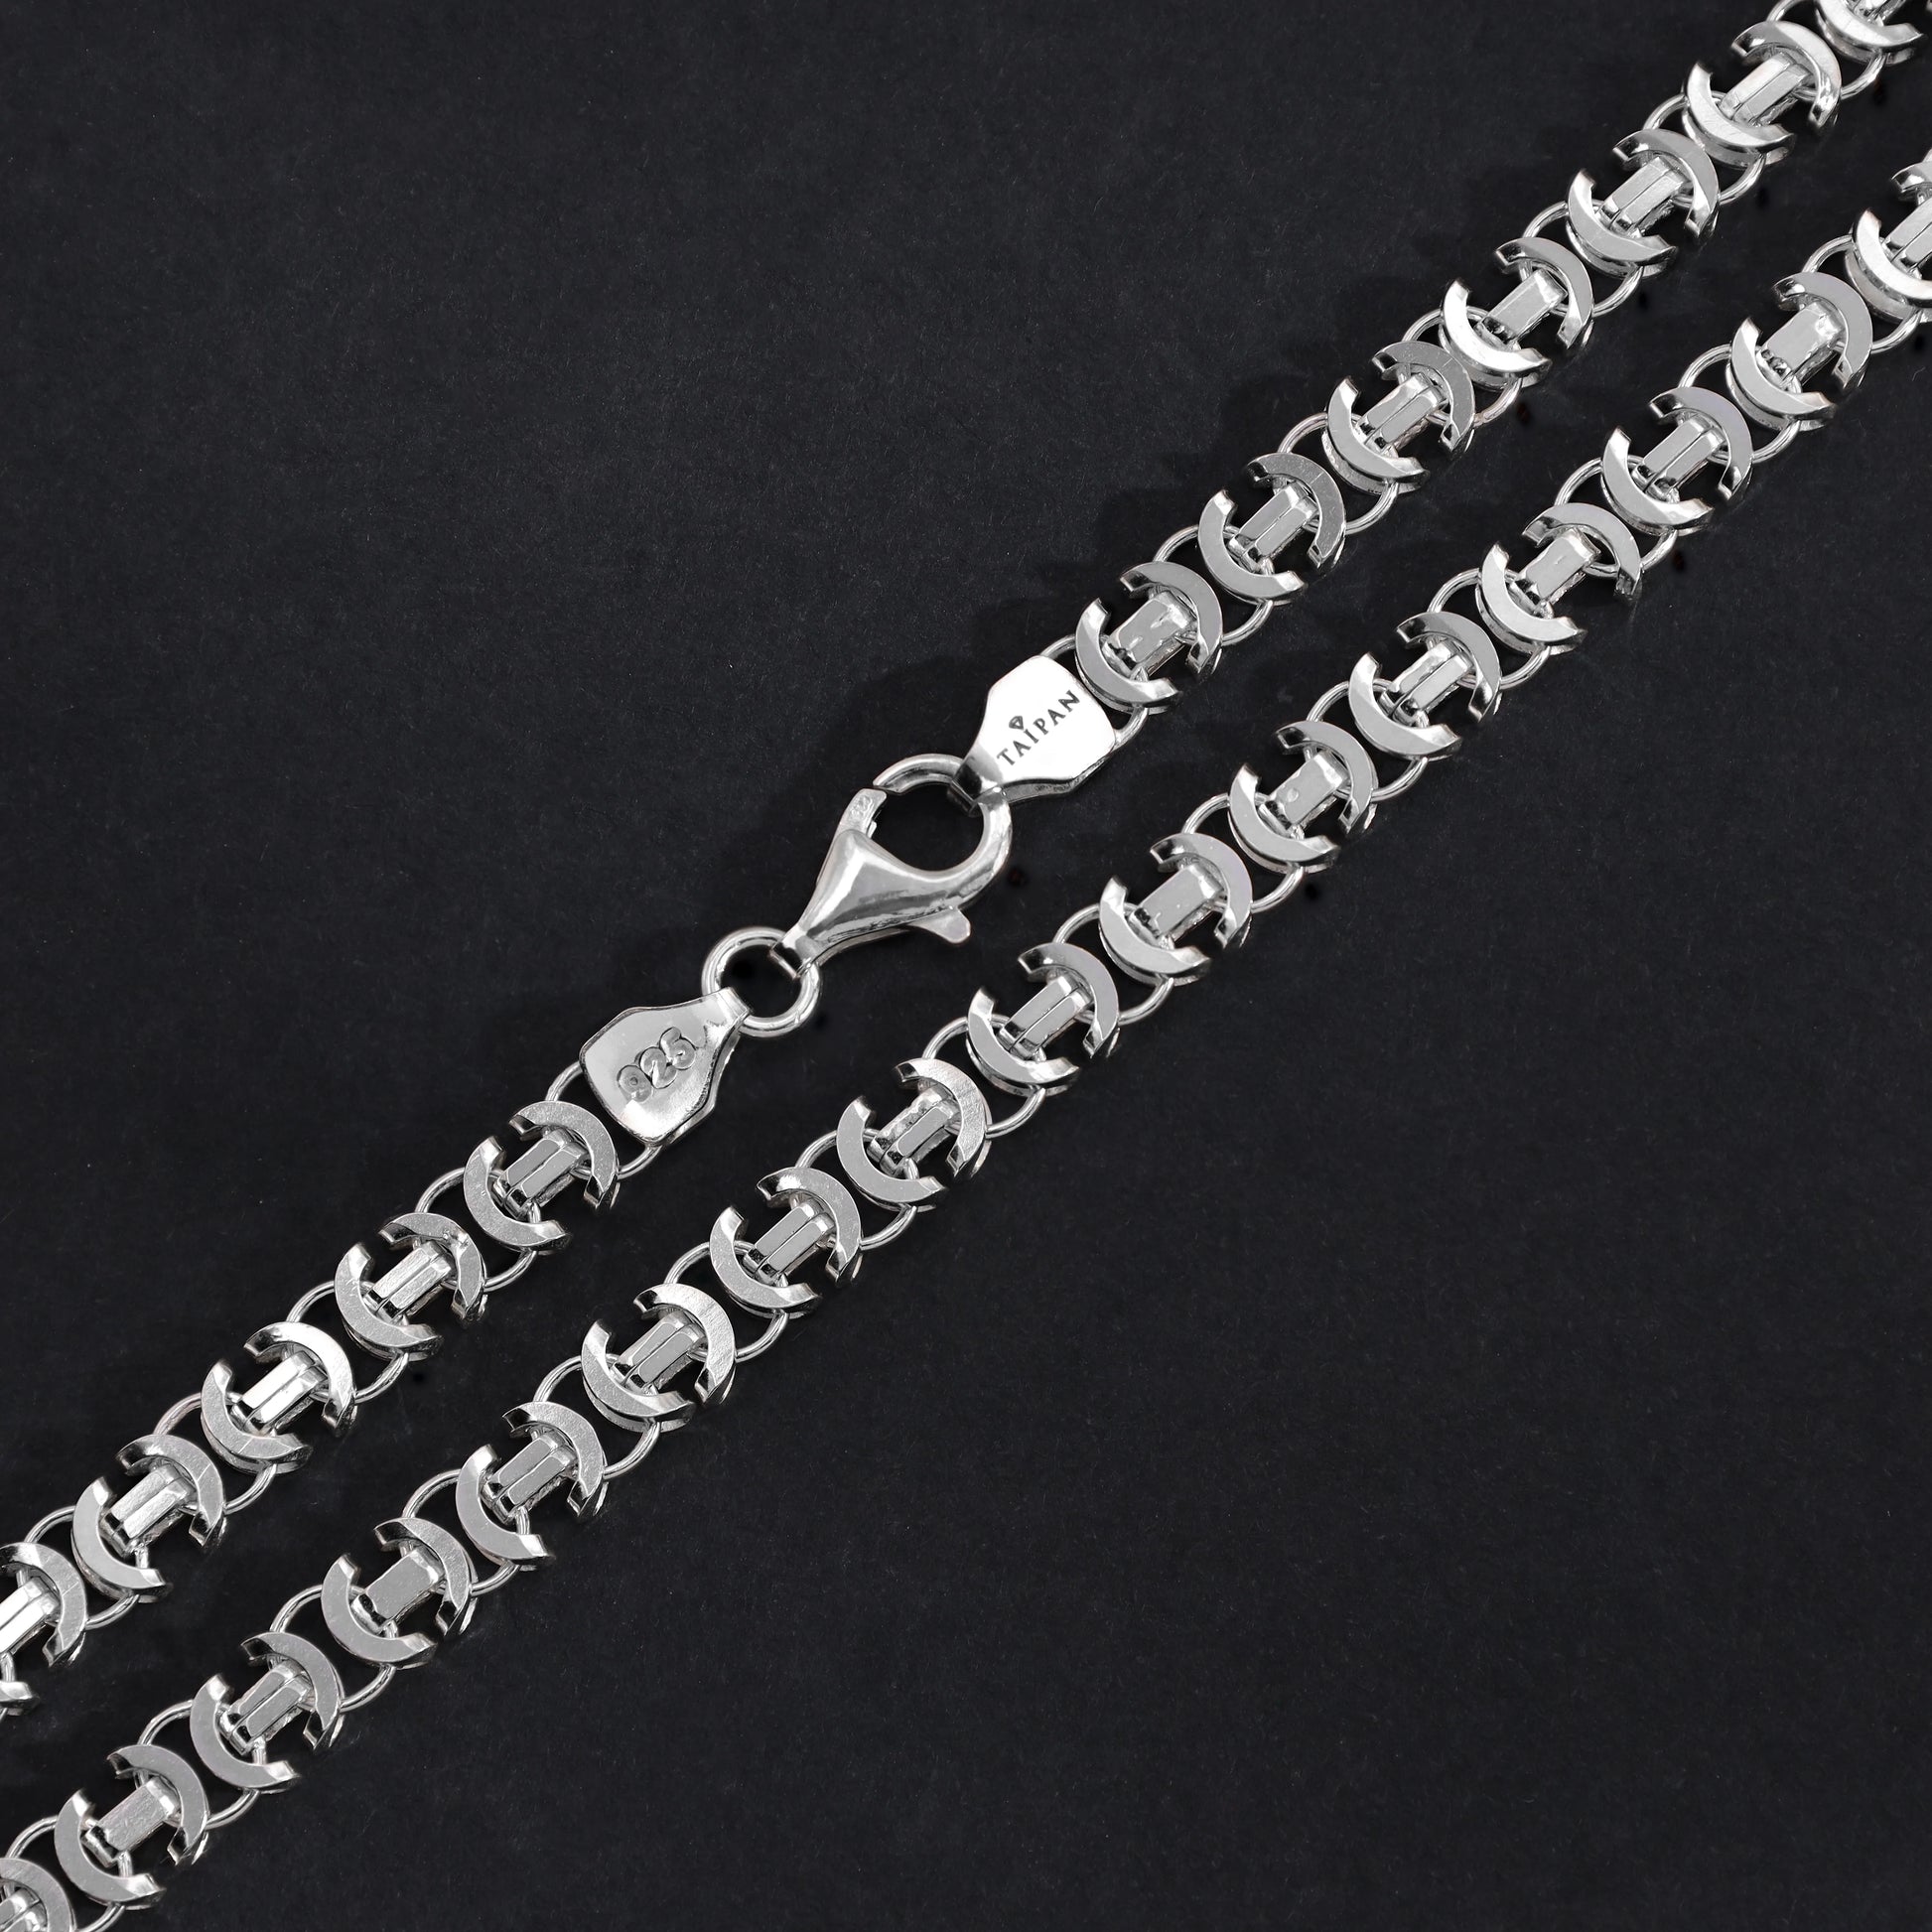 Flache Königskette Etrusker Kette 65cm lang 6mm breit 925 Sterling Silber (K855) - Taipan Schmuck